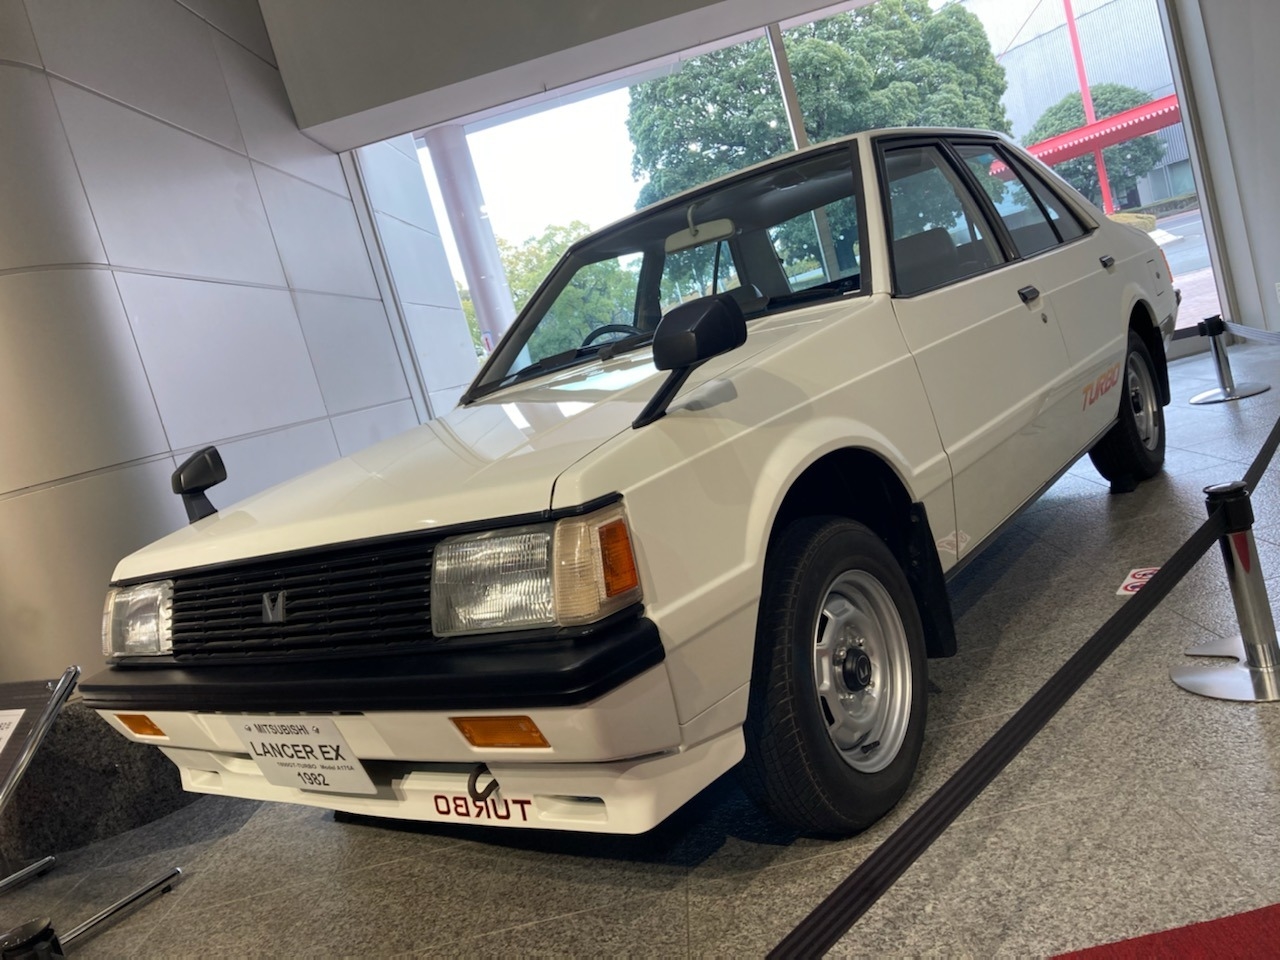 トヨタ博物館の展示車両たち 三菱ランサーexターボ